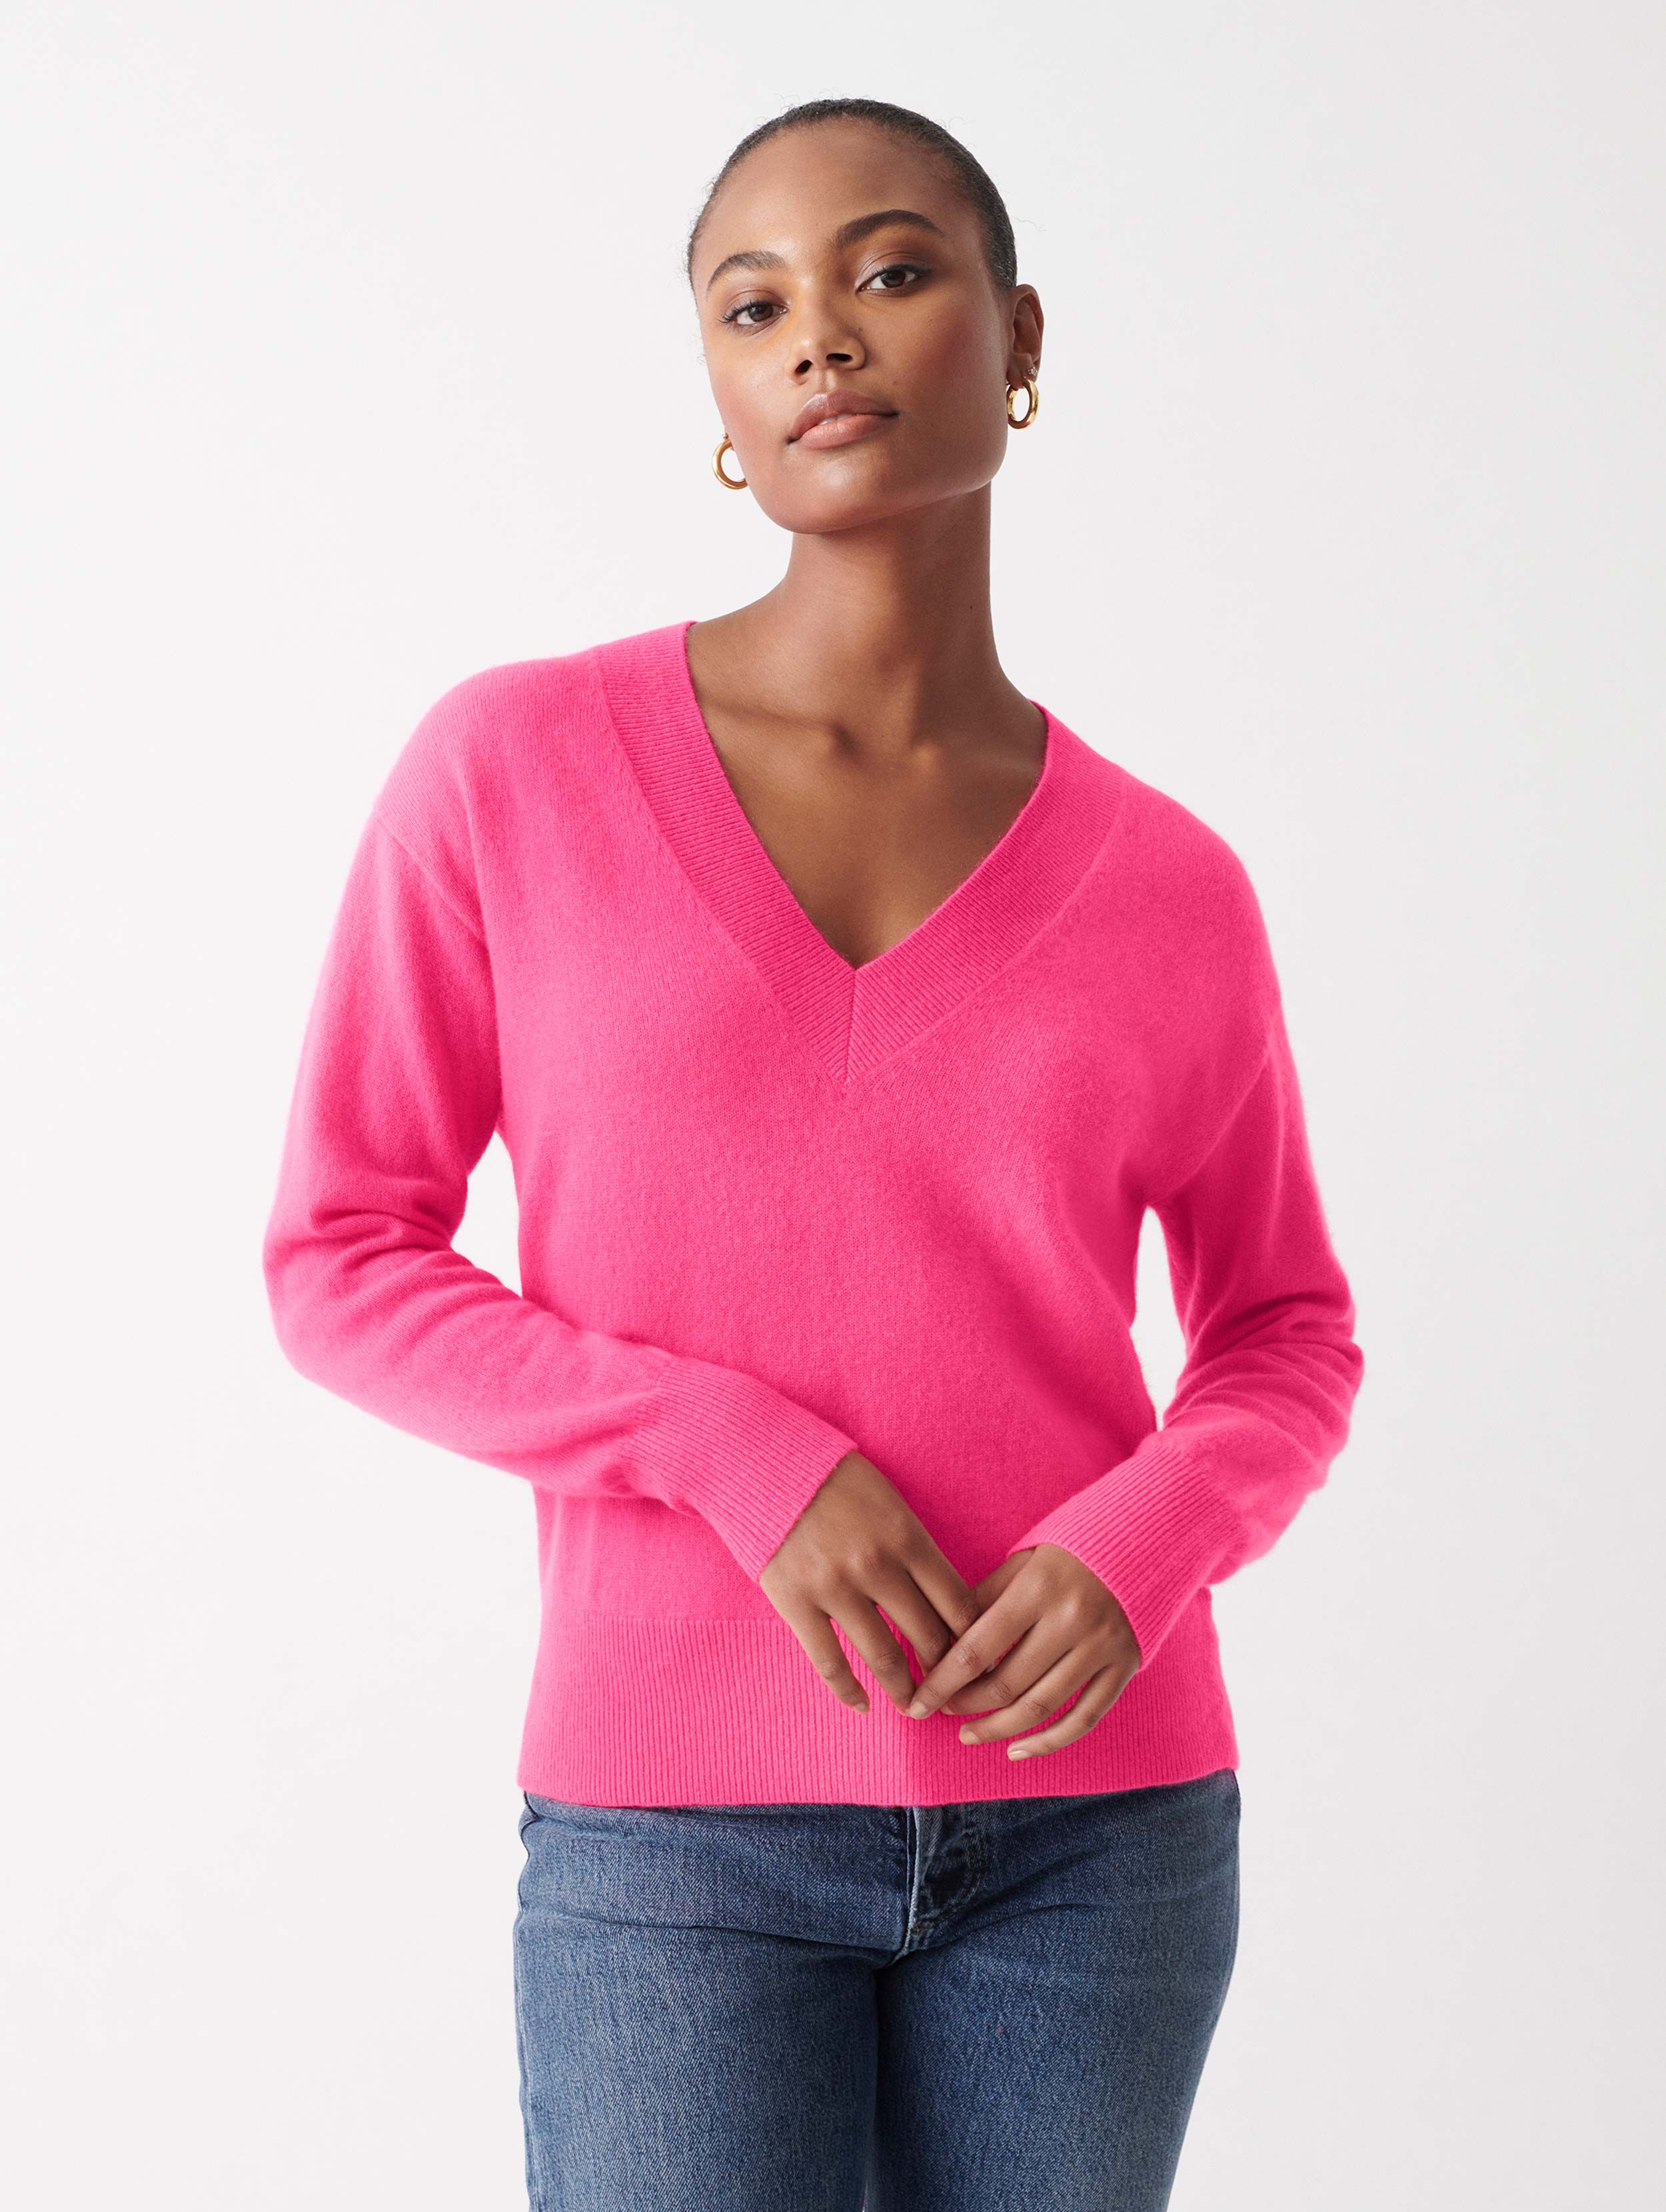 White + Warren Essential Cashmere V Neck Sweater in Neon Pink Sunrise size Medium | White and Warren